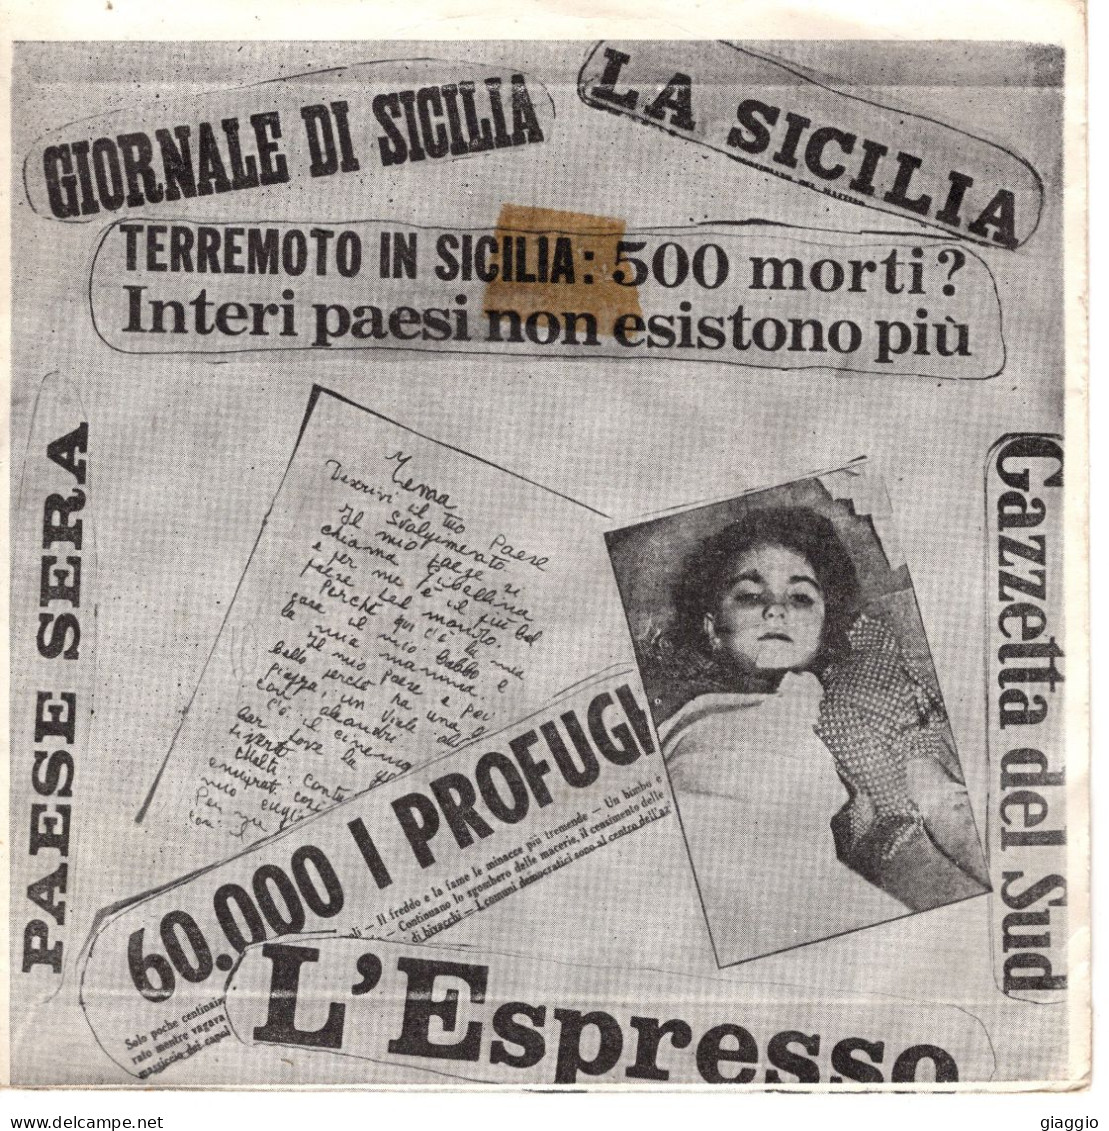 °°° 562) 45 GIRI - MARIELLA ROSTA - LA STORIA DI ANNAMARIA L'ORFANELLA DEL TERREMOTO °°° - Other - Italian Music